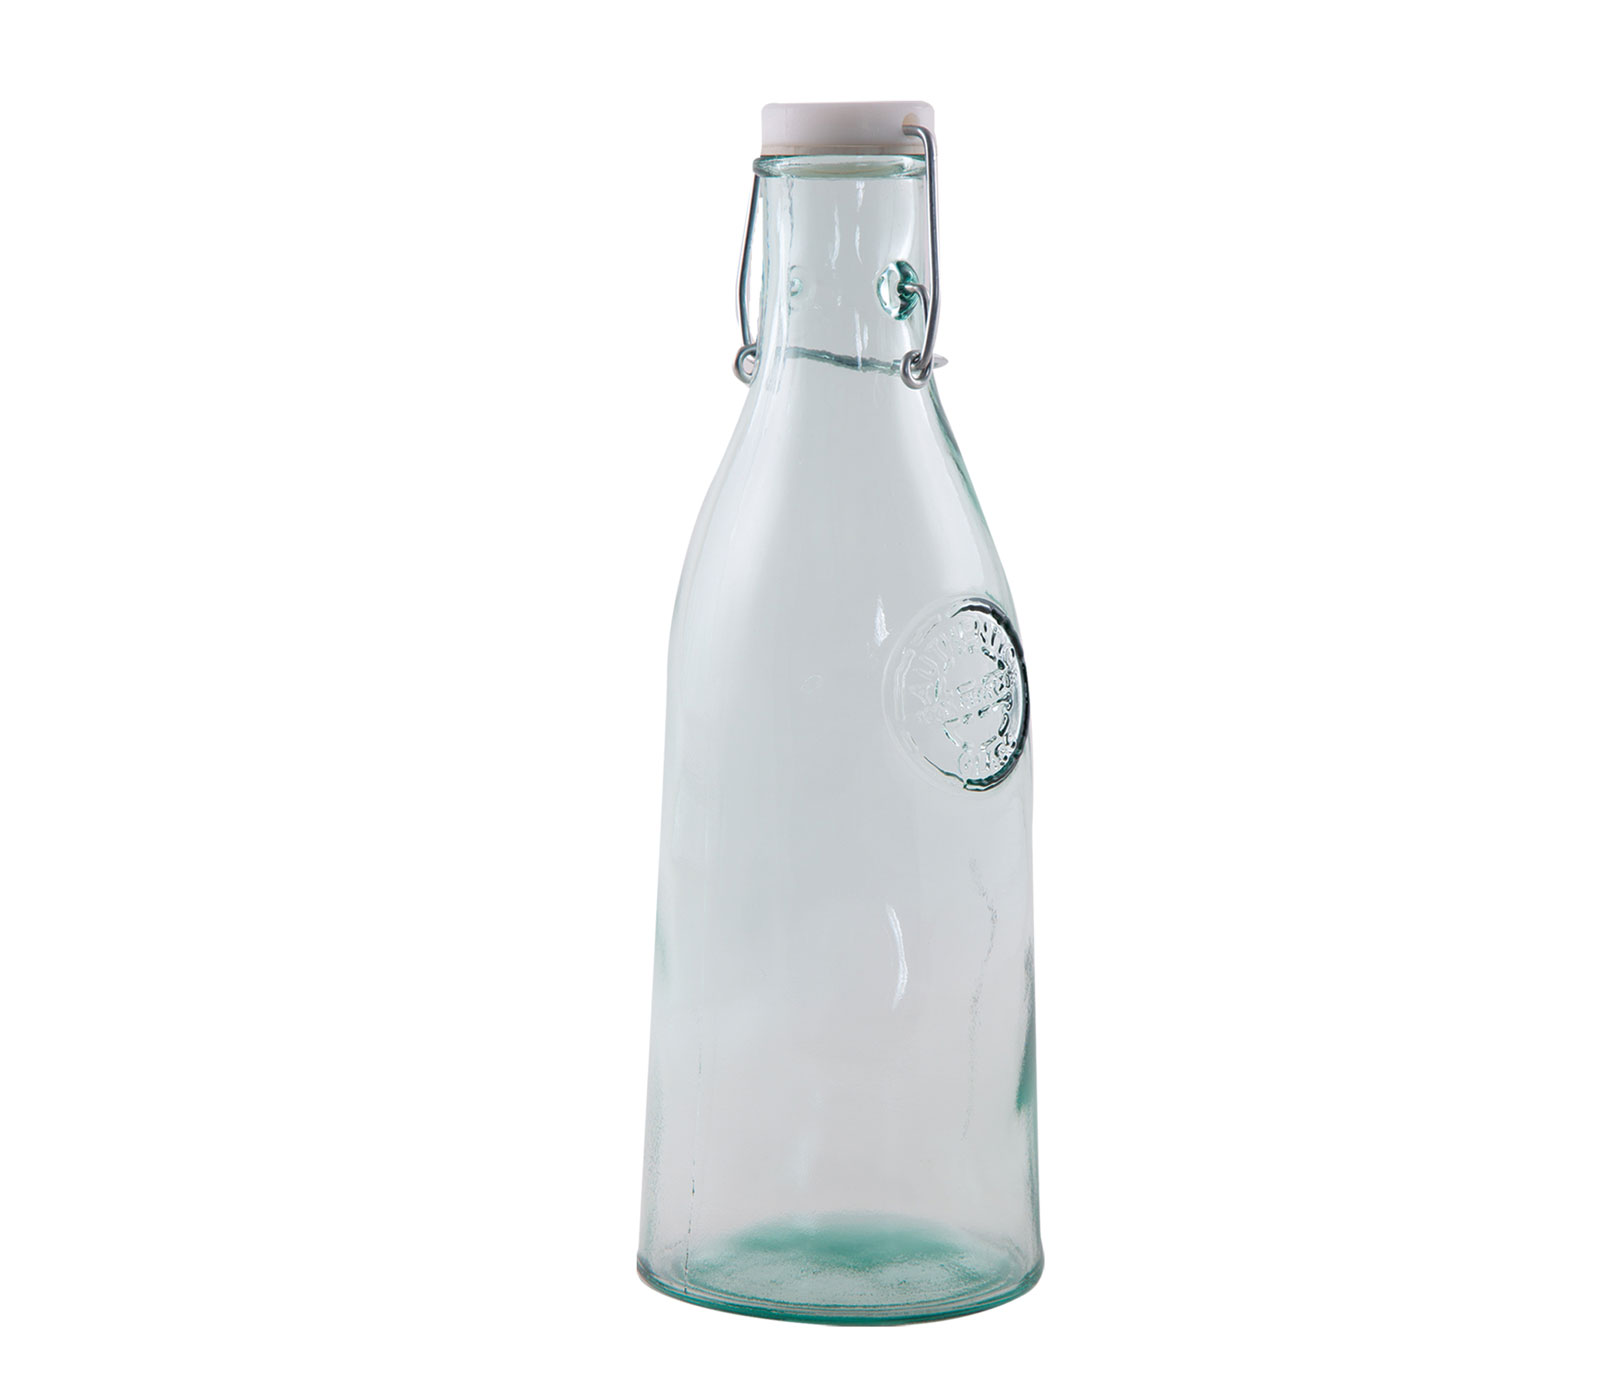 Μπουκάλι Νερού Nef-Nef Από Ανακυκλωμένο Γυαλί Με Πλαστικό Καπάκι Authentic 1L